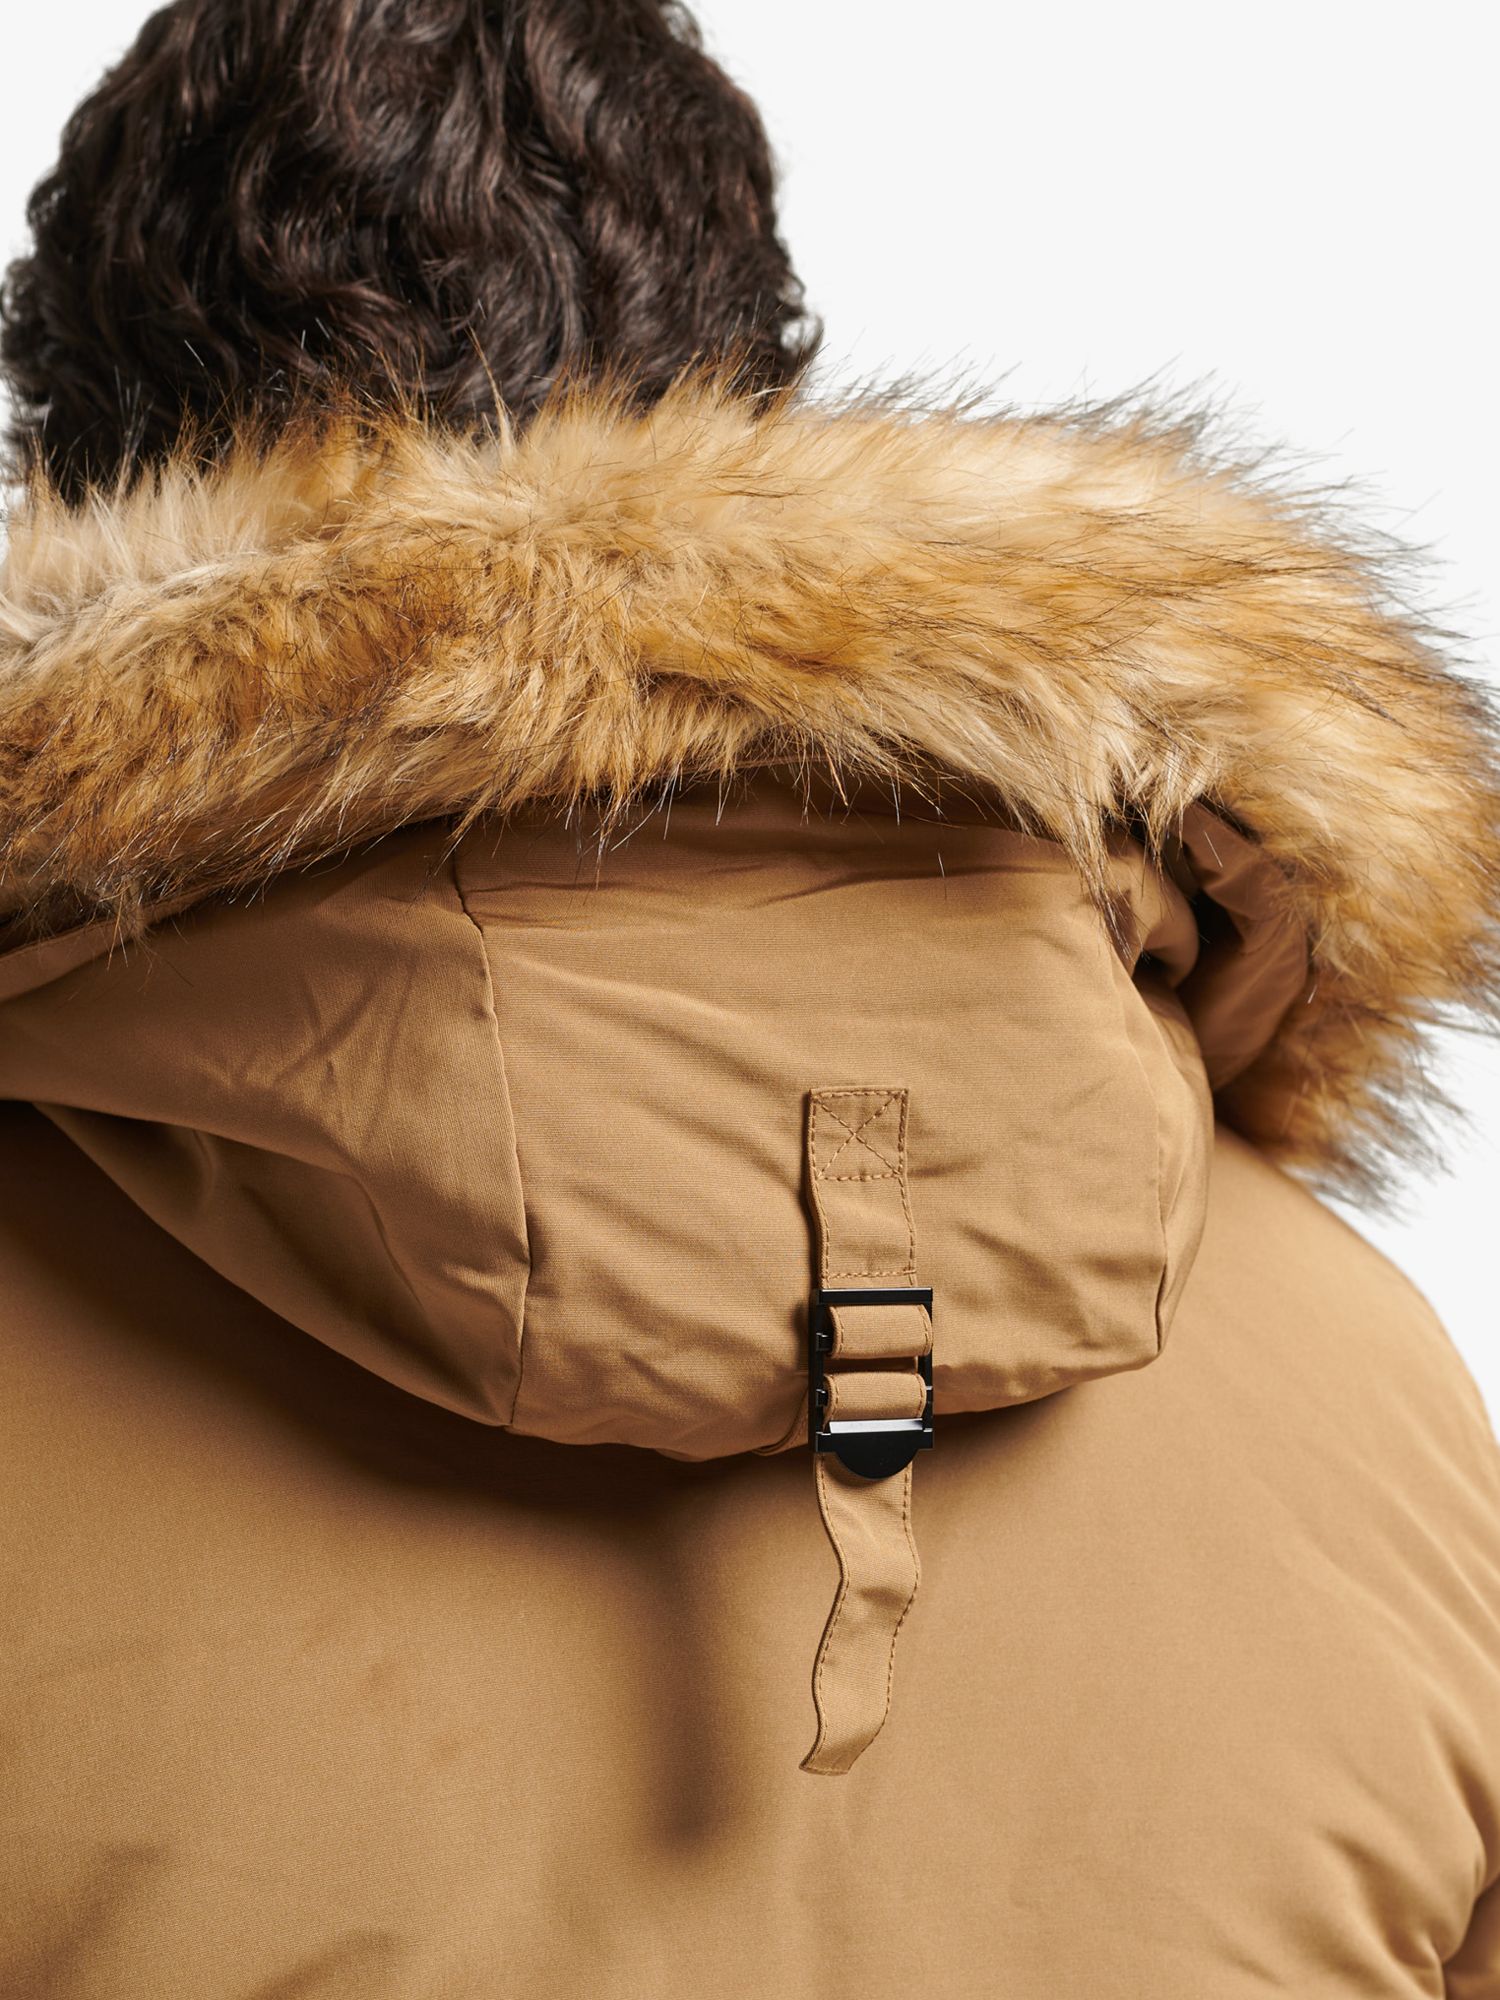 Superdry Hooded Everest Faux Fur at Lewis Sandstone Partners John & Parka